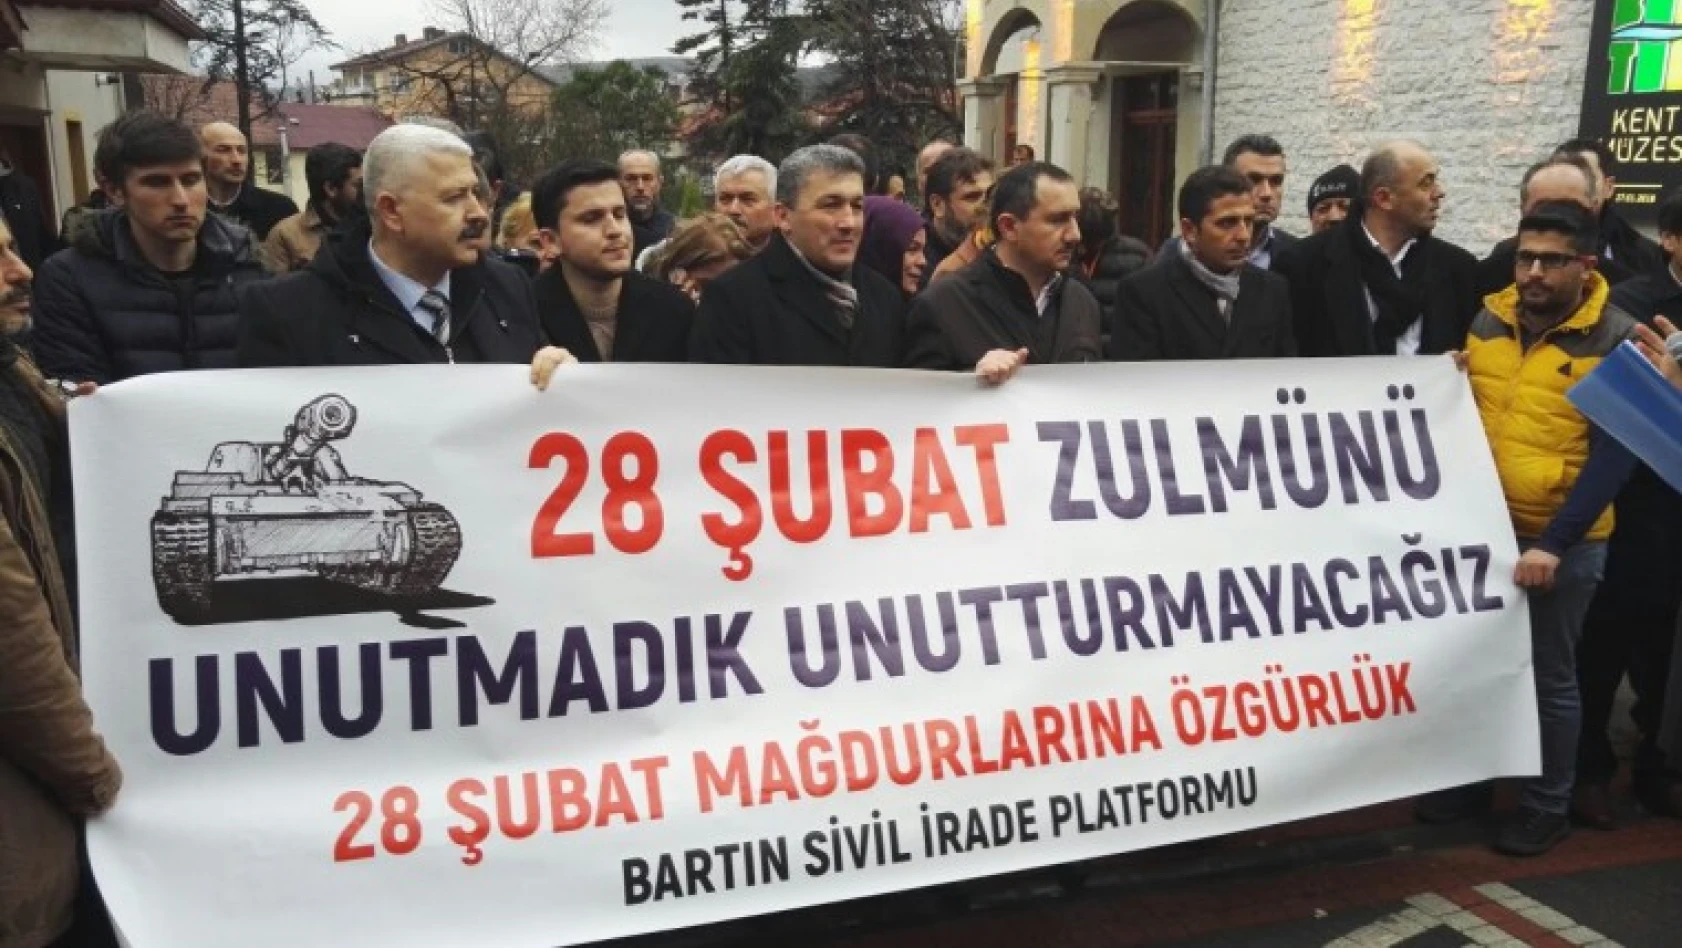 Platform, 28 Şubat mağdurları için adalet istedi